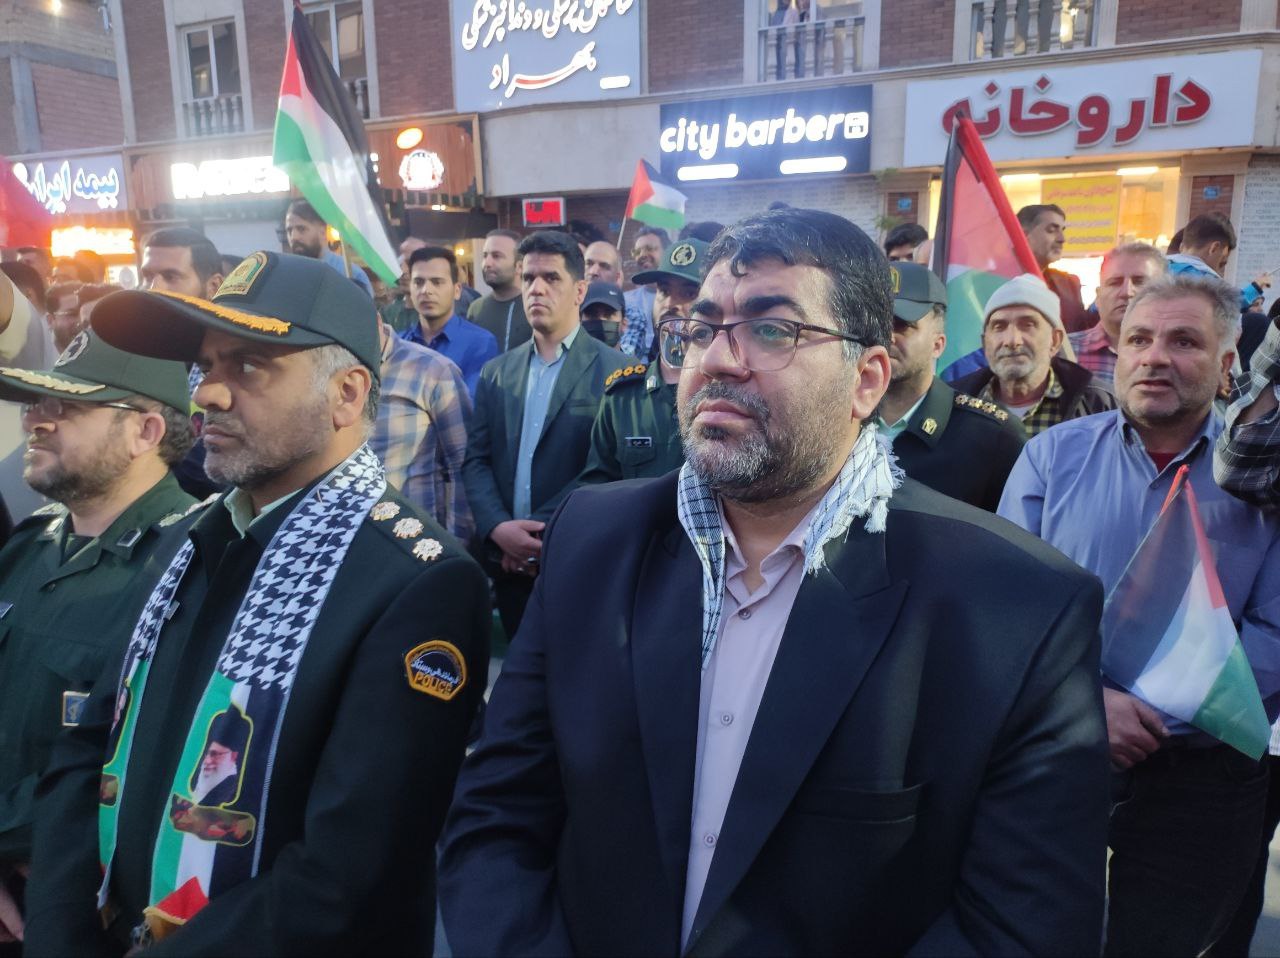 شهردار صالحیه در حاشیه جشن #پاسخ_سخت، از جانفشانی نیروهای مسلح کشور در تامین نظم و آرامش کشور تقدیر کرد